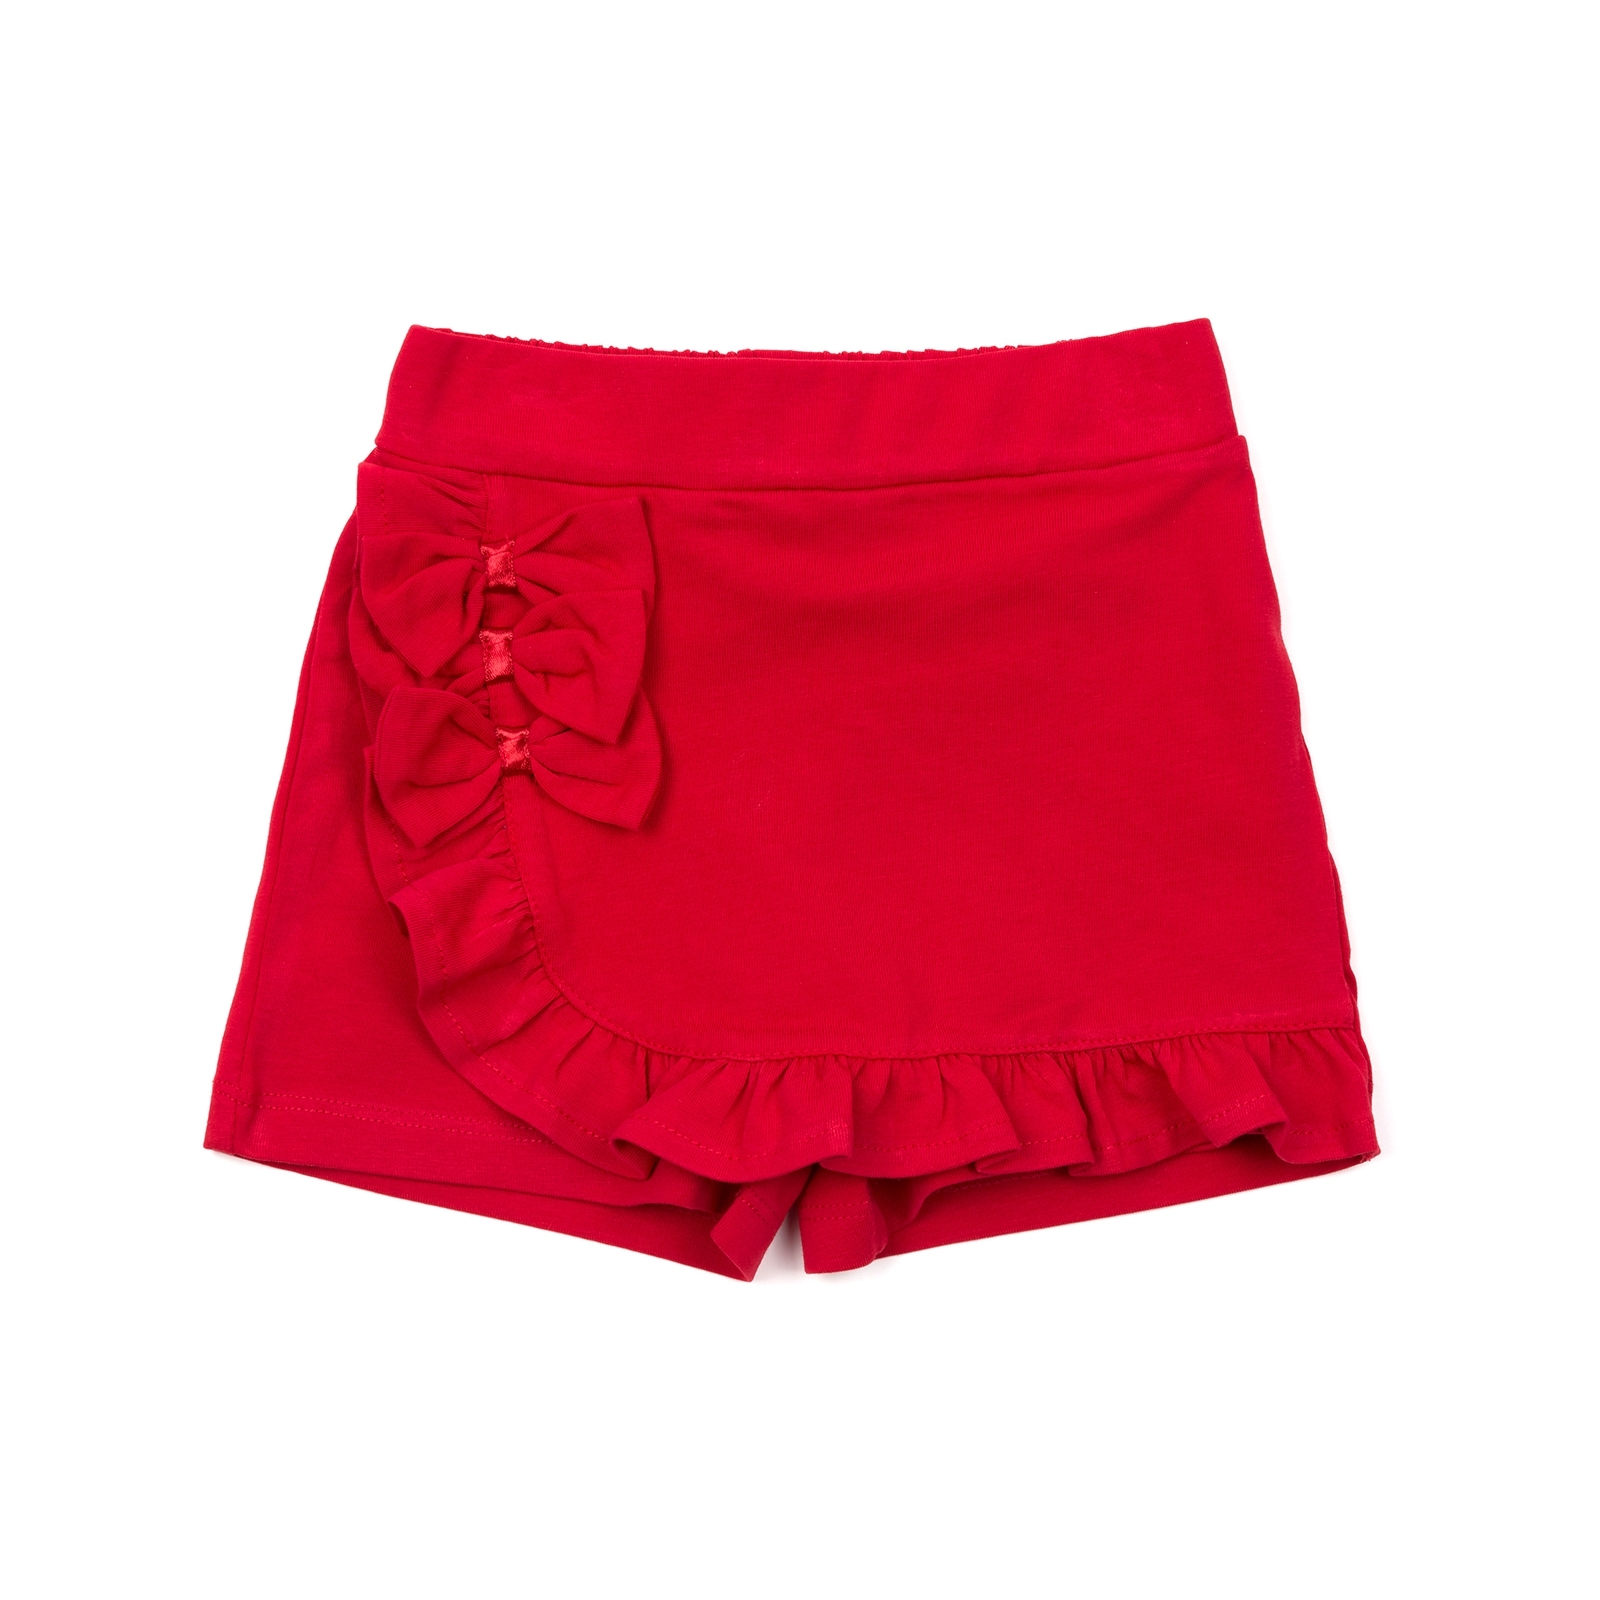 Шорты Breeze юбка (12416-110G-red)